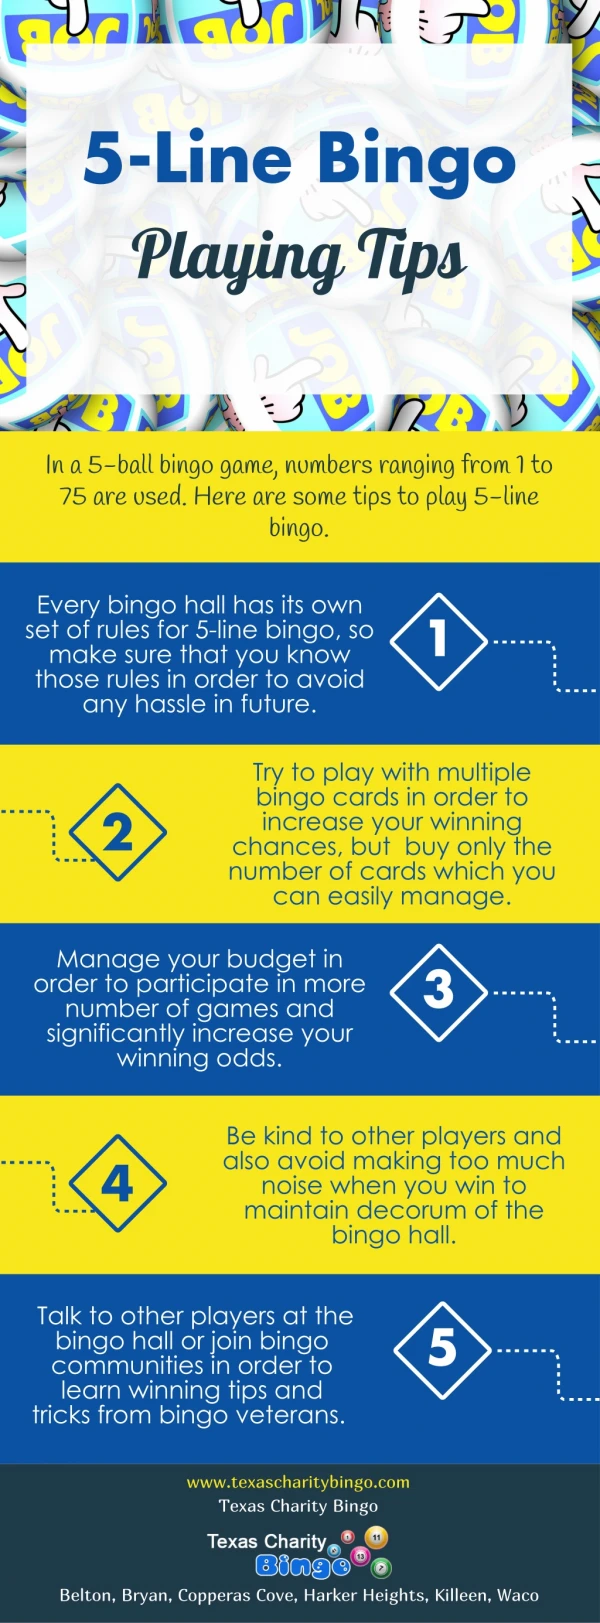 5-Line Bingo Playing Tips